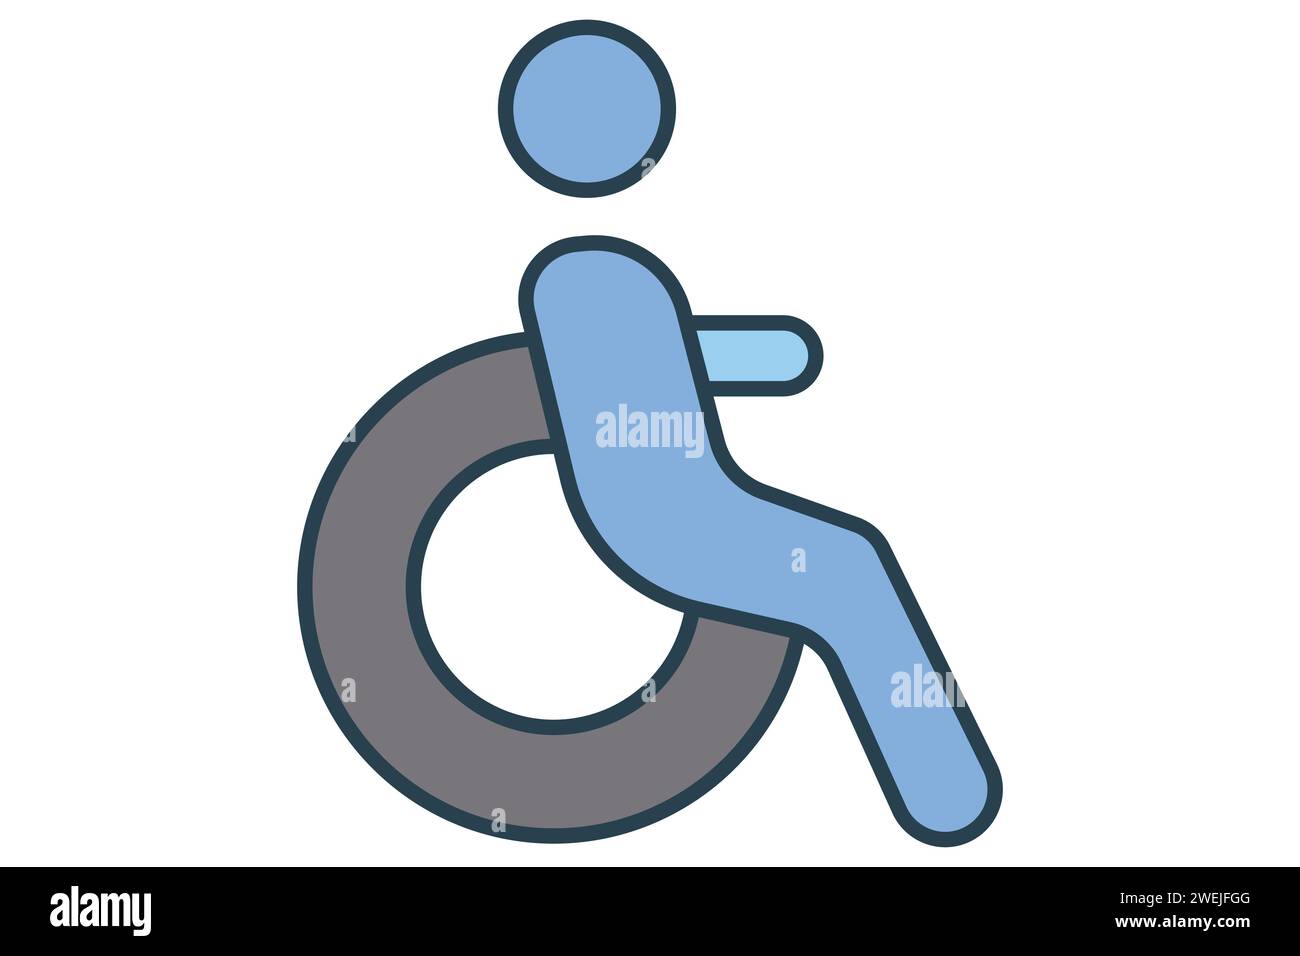 Rollstuhl für Behinderte Icon. Symbol für zugängliche Routen. Symbolstil für flache Linien. Elementabbildung Stock Vektor